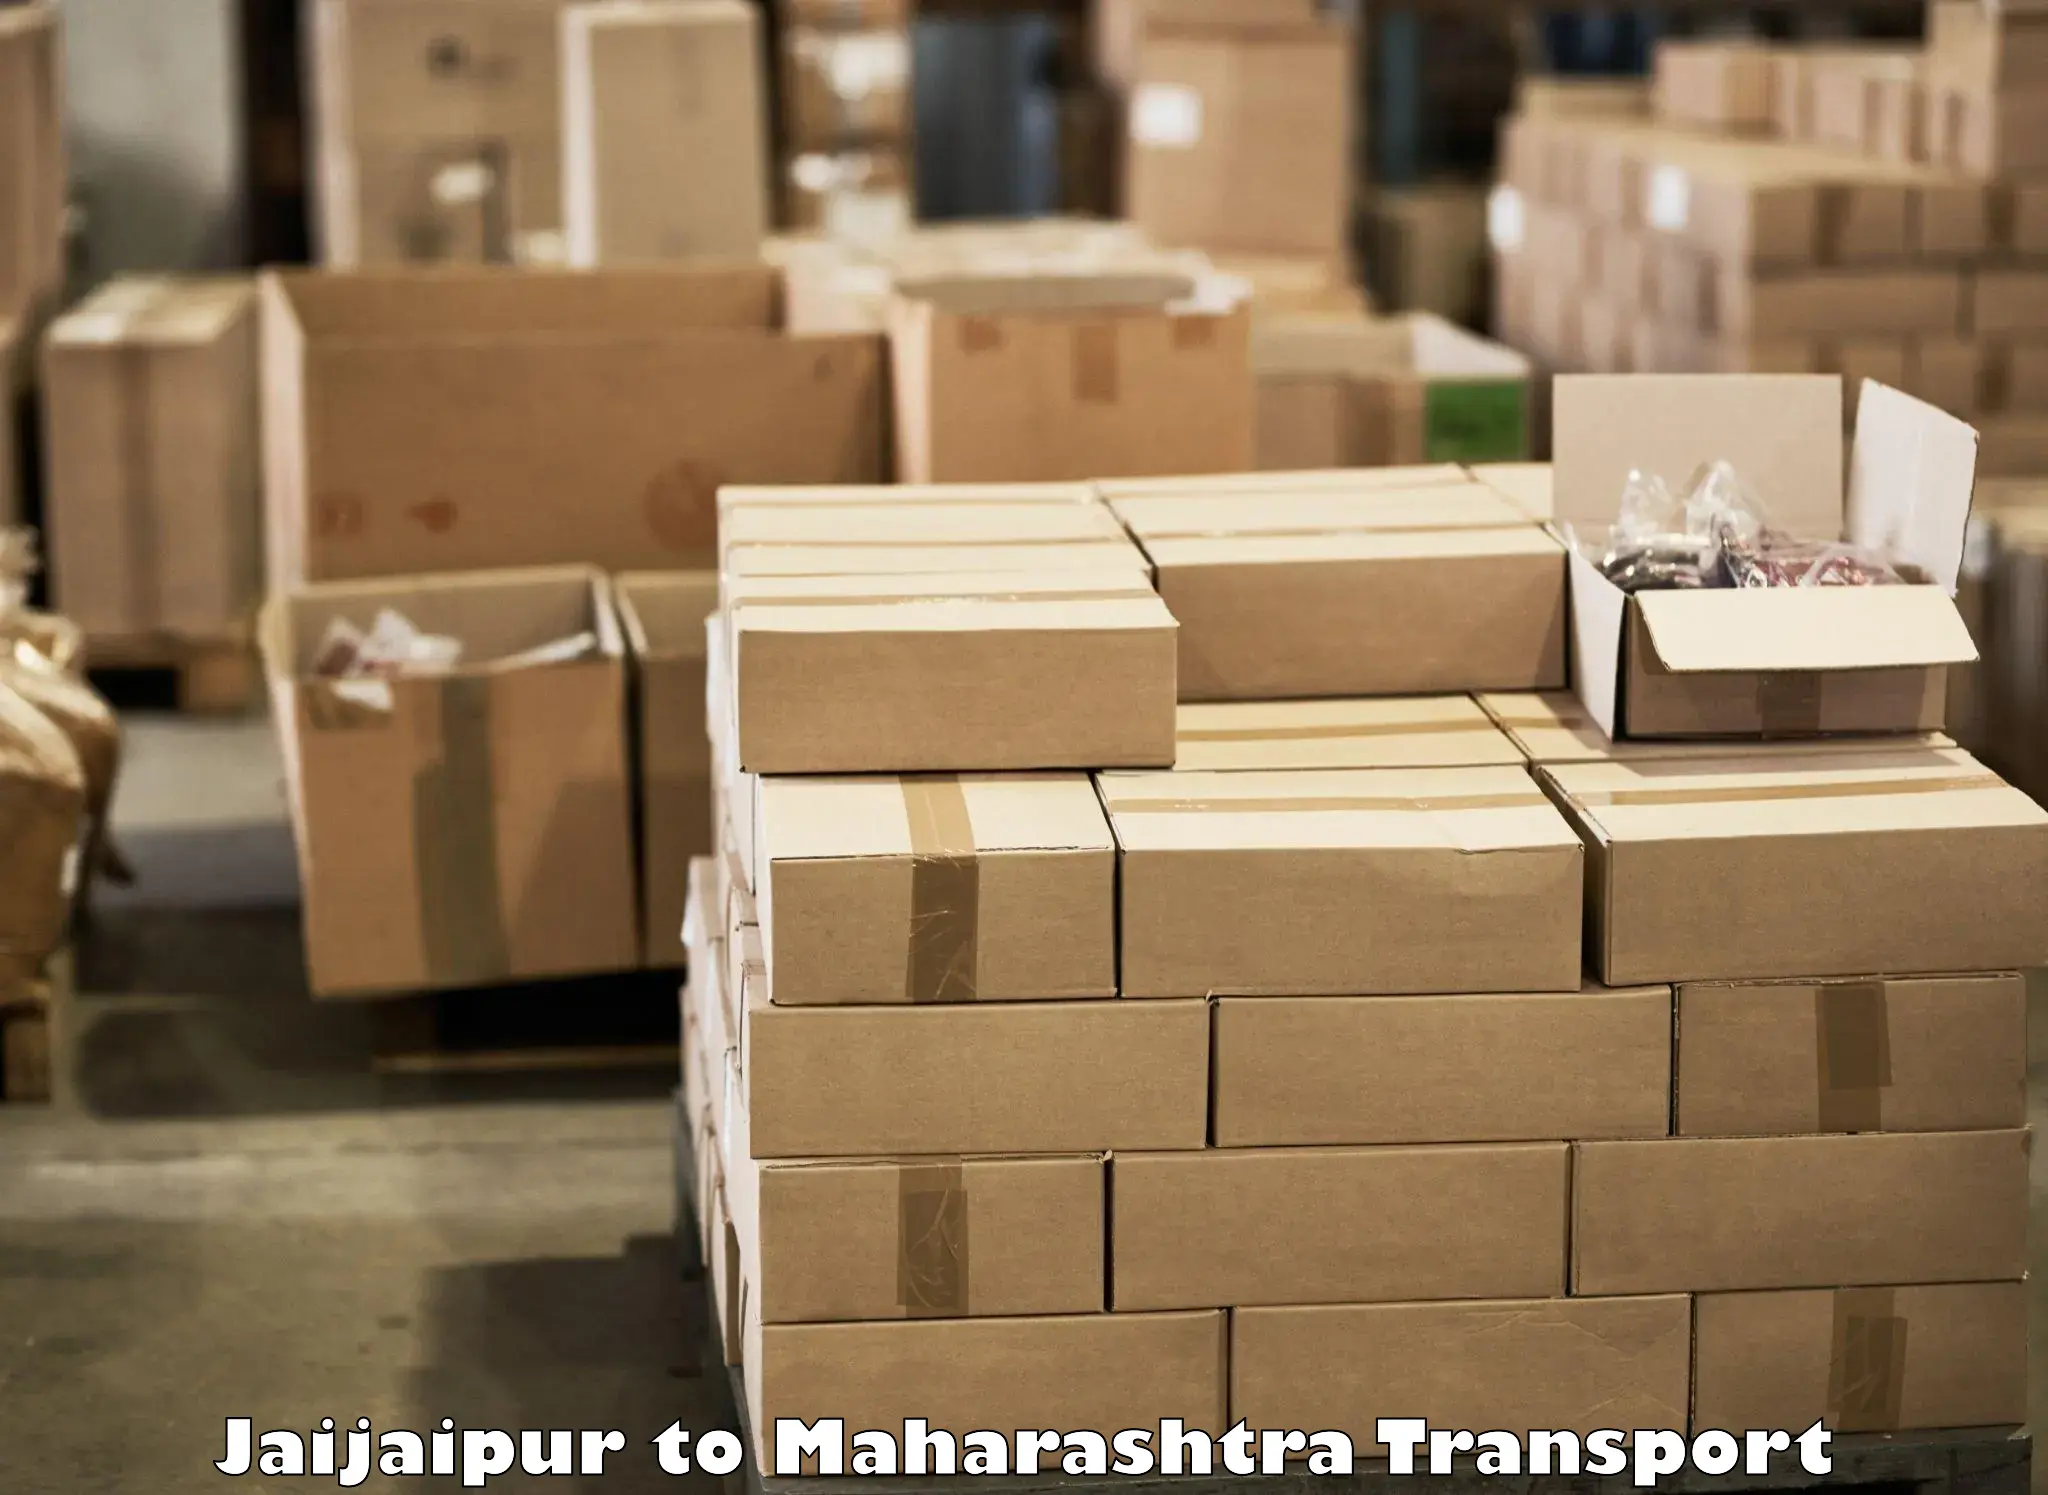 Shipping partner Jaijaipur to IIIT Nagpur